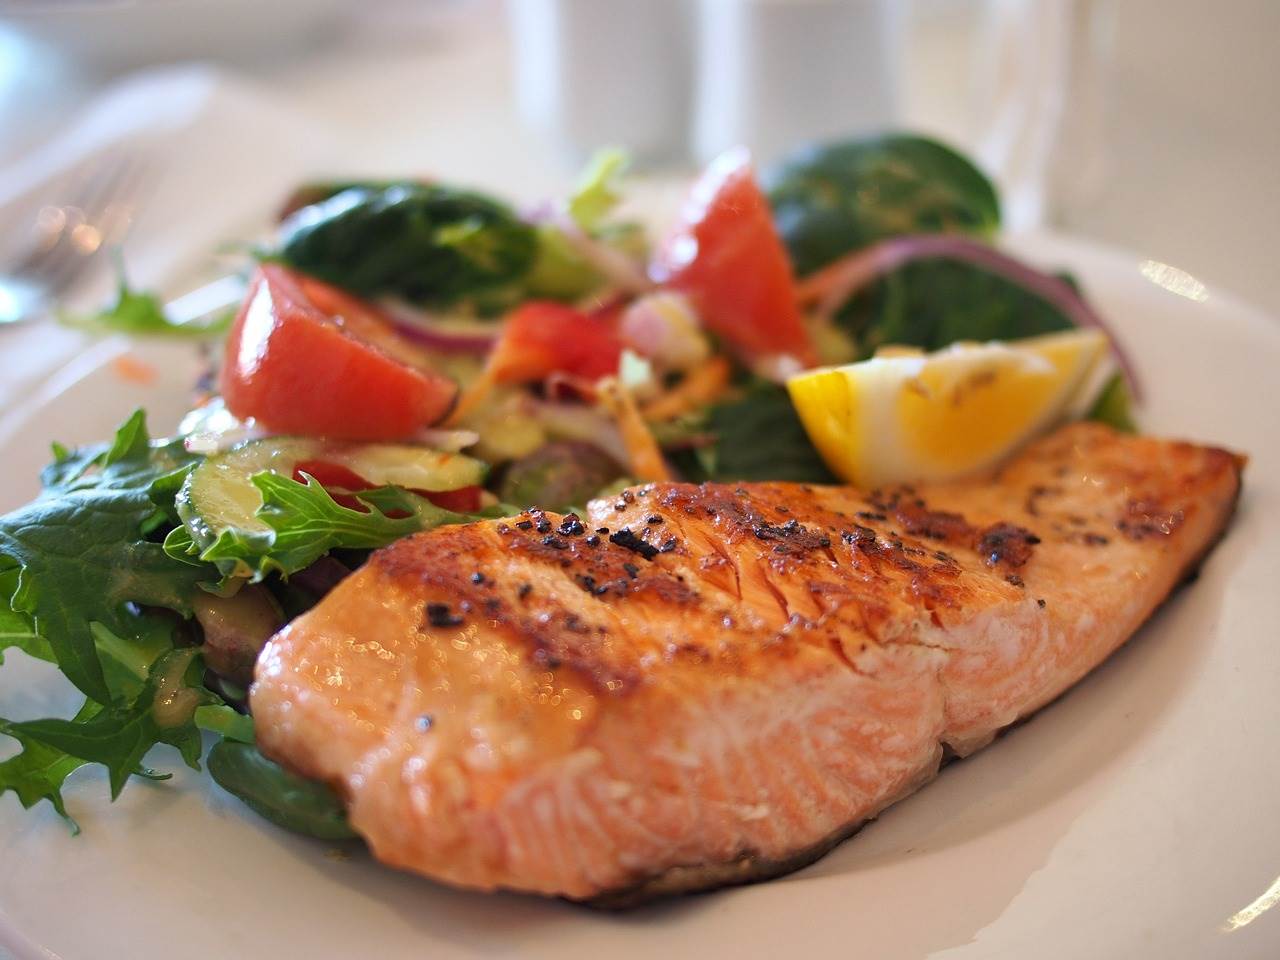  Zdrav ručak za cijelu porodicu - krcat vitaminima, a ukusan! Hljeb sa lukom, salata i riba na grčki način! 